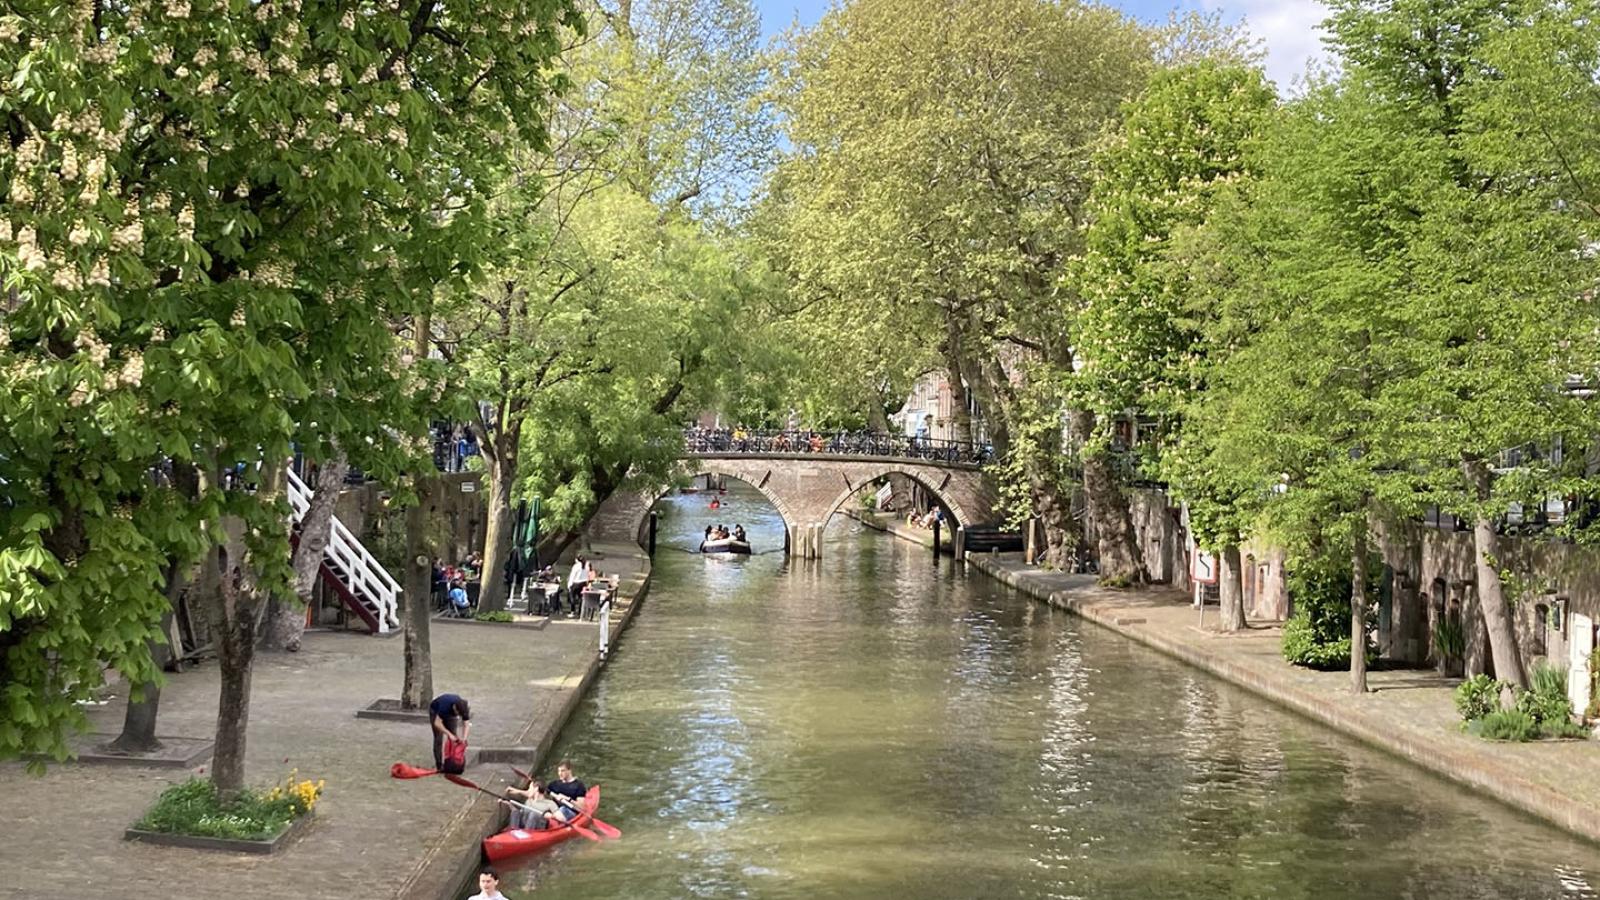 Man blickt auf einen stillen Kanal und eine kleine Brücke aus Stein die diesen überquert. Das Ufer ist mit Bäumen bepflanzt die viele Grüne Blätter tragen. Zwei Personen paddeln einzeln im Kanu.